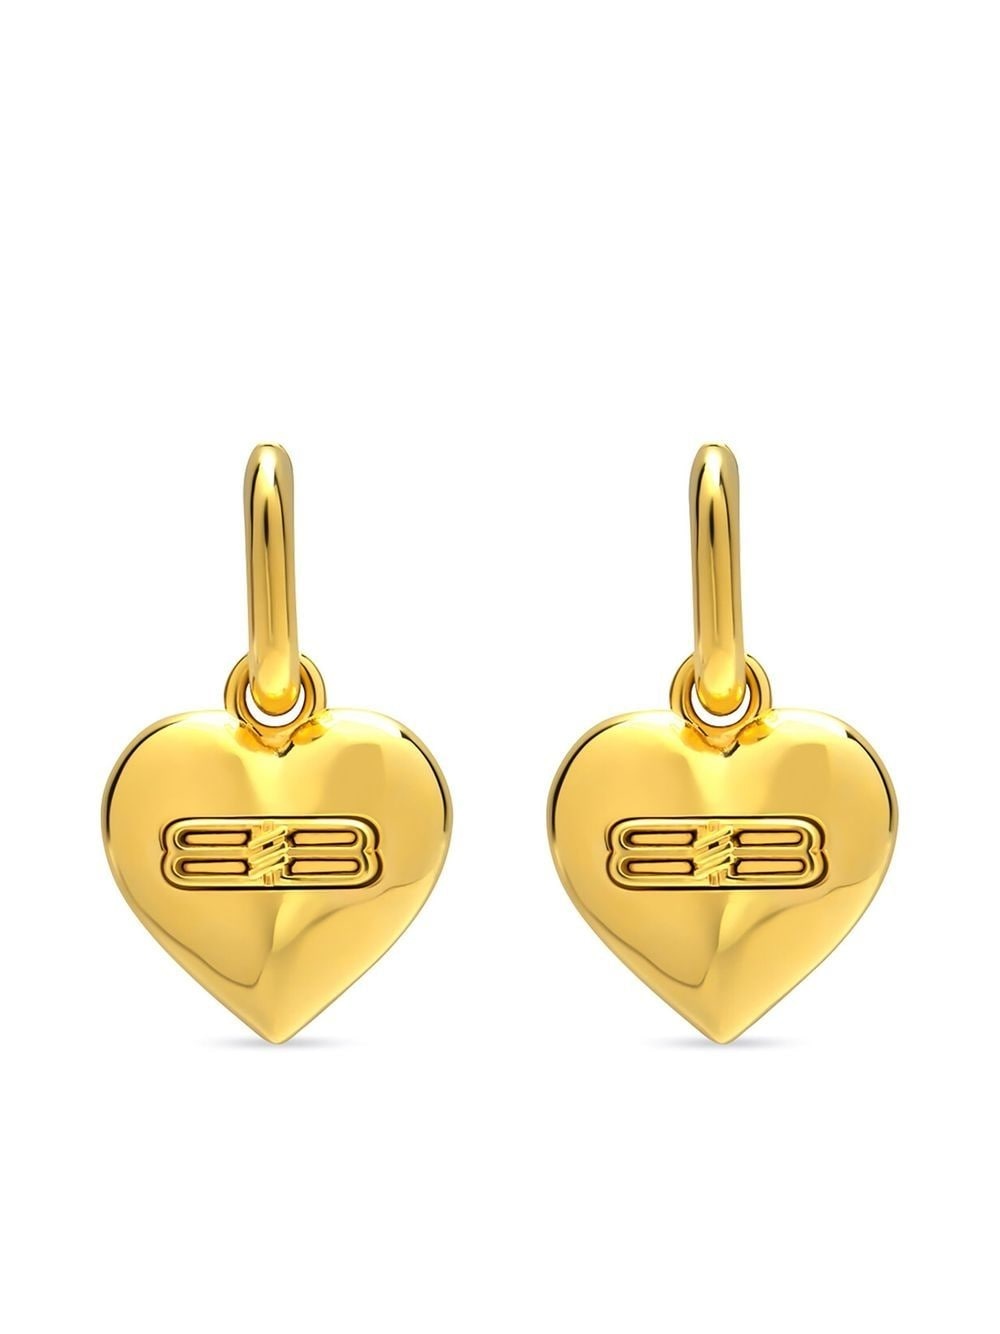 BB heart-shaped earrings - 1